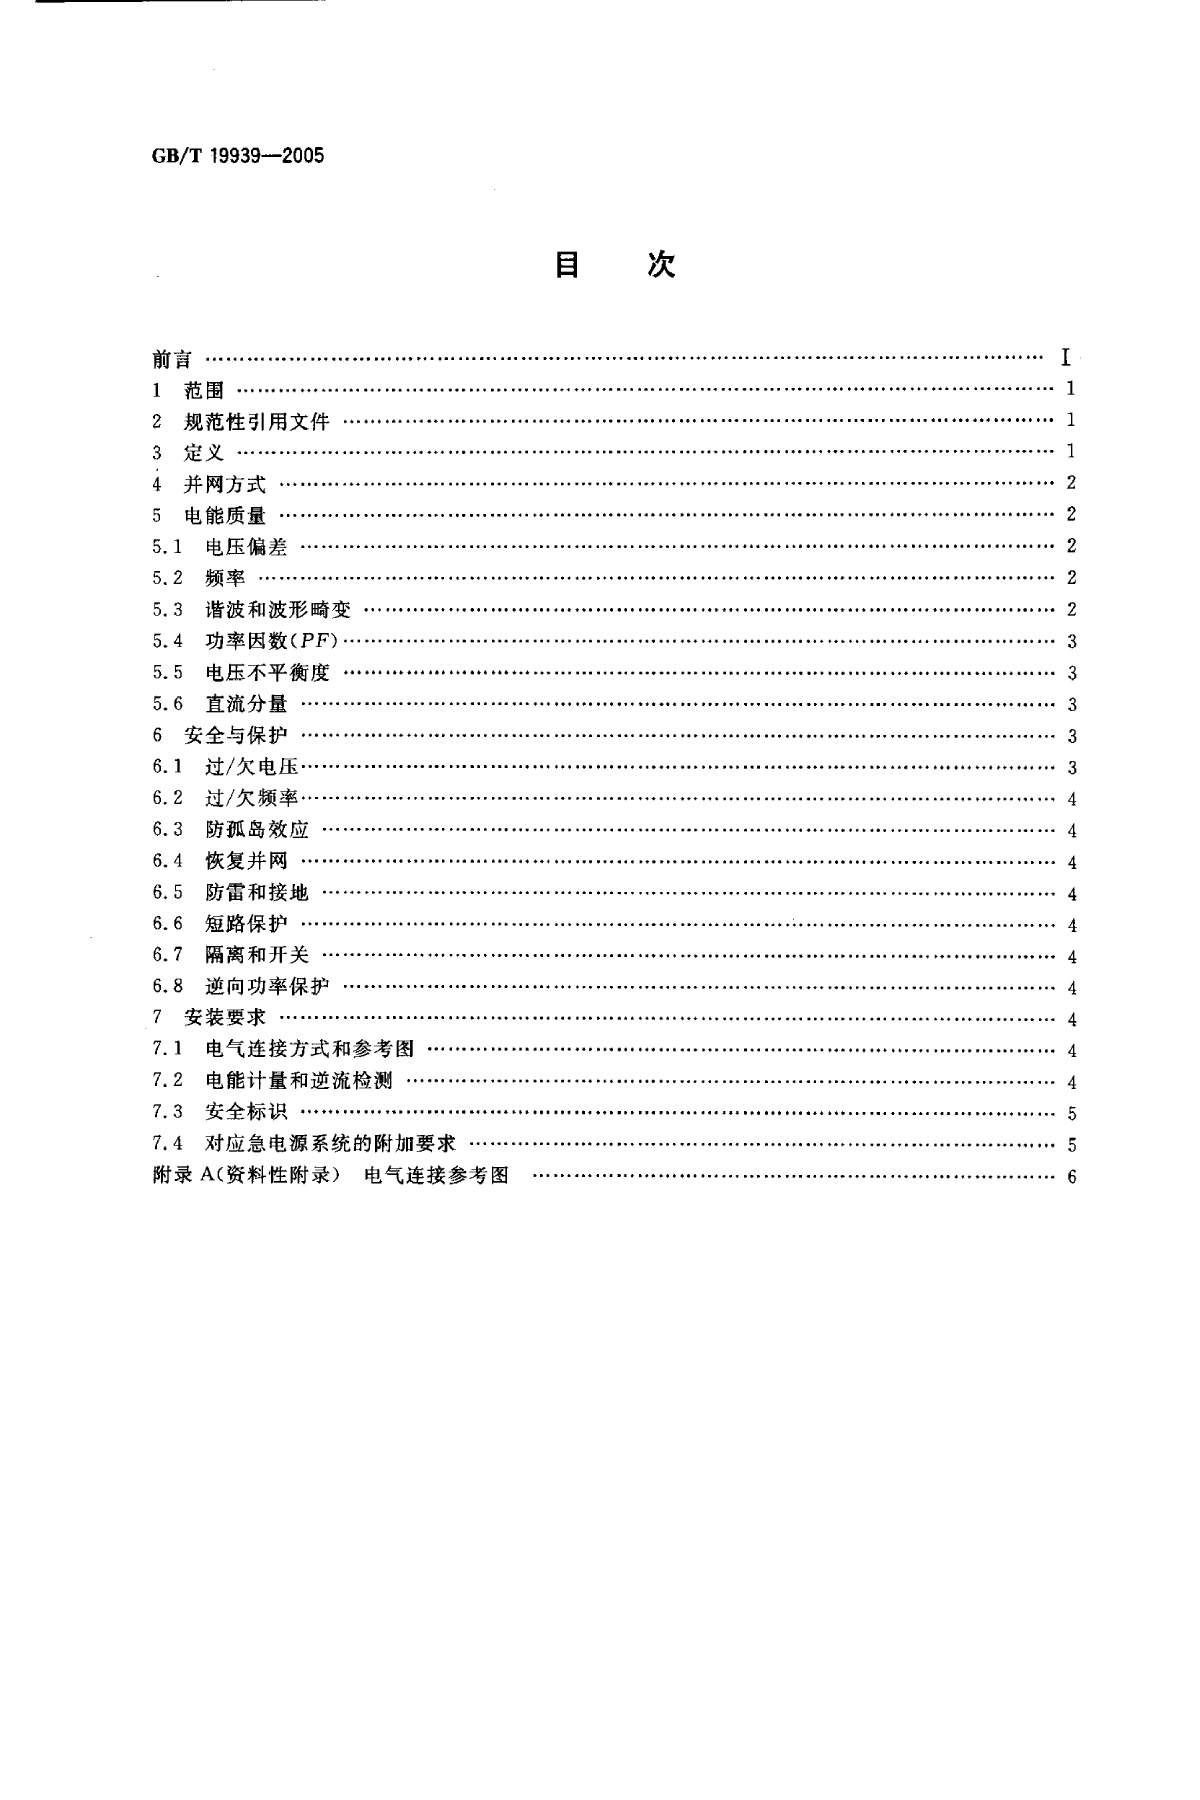 GBT19939-2005_光伏系统并网技术要求.pdf-图二